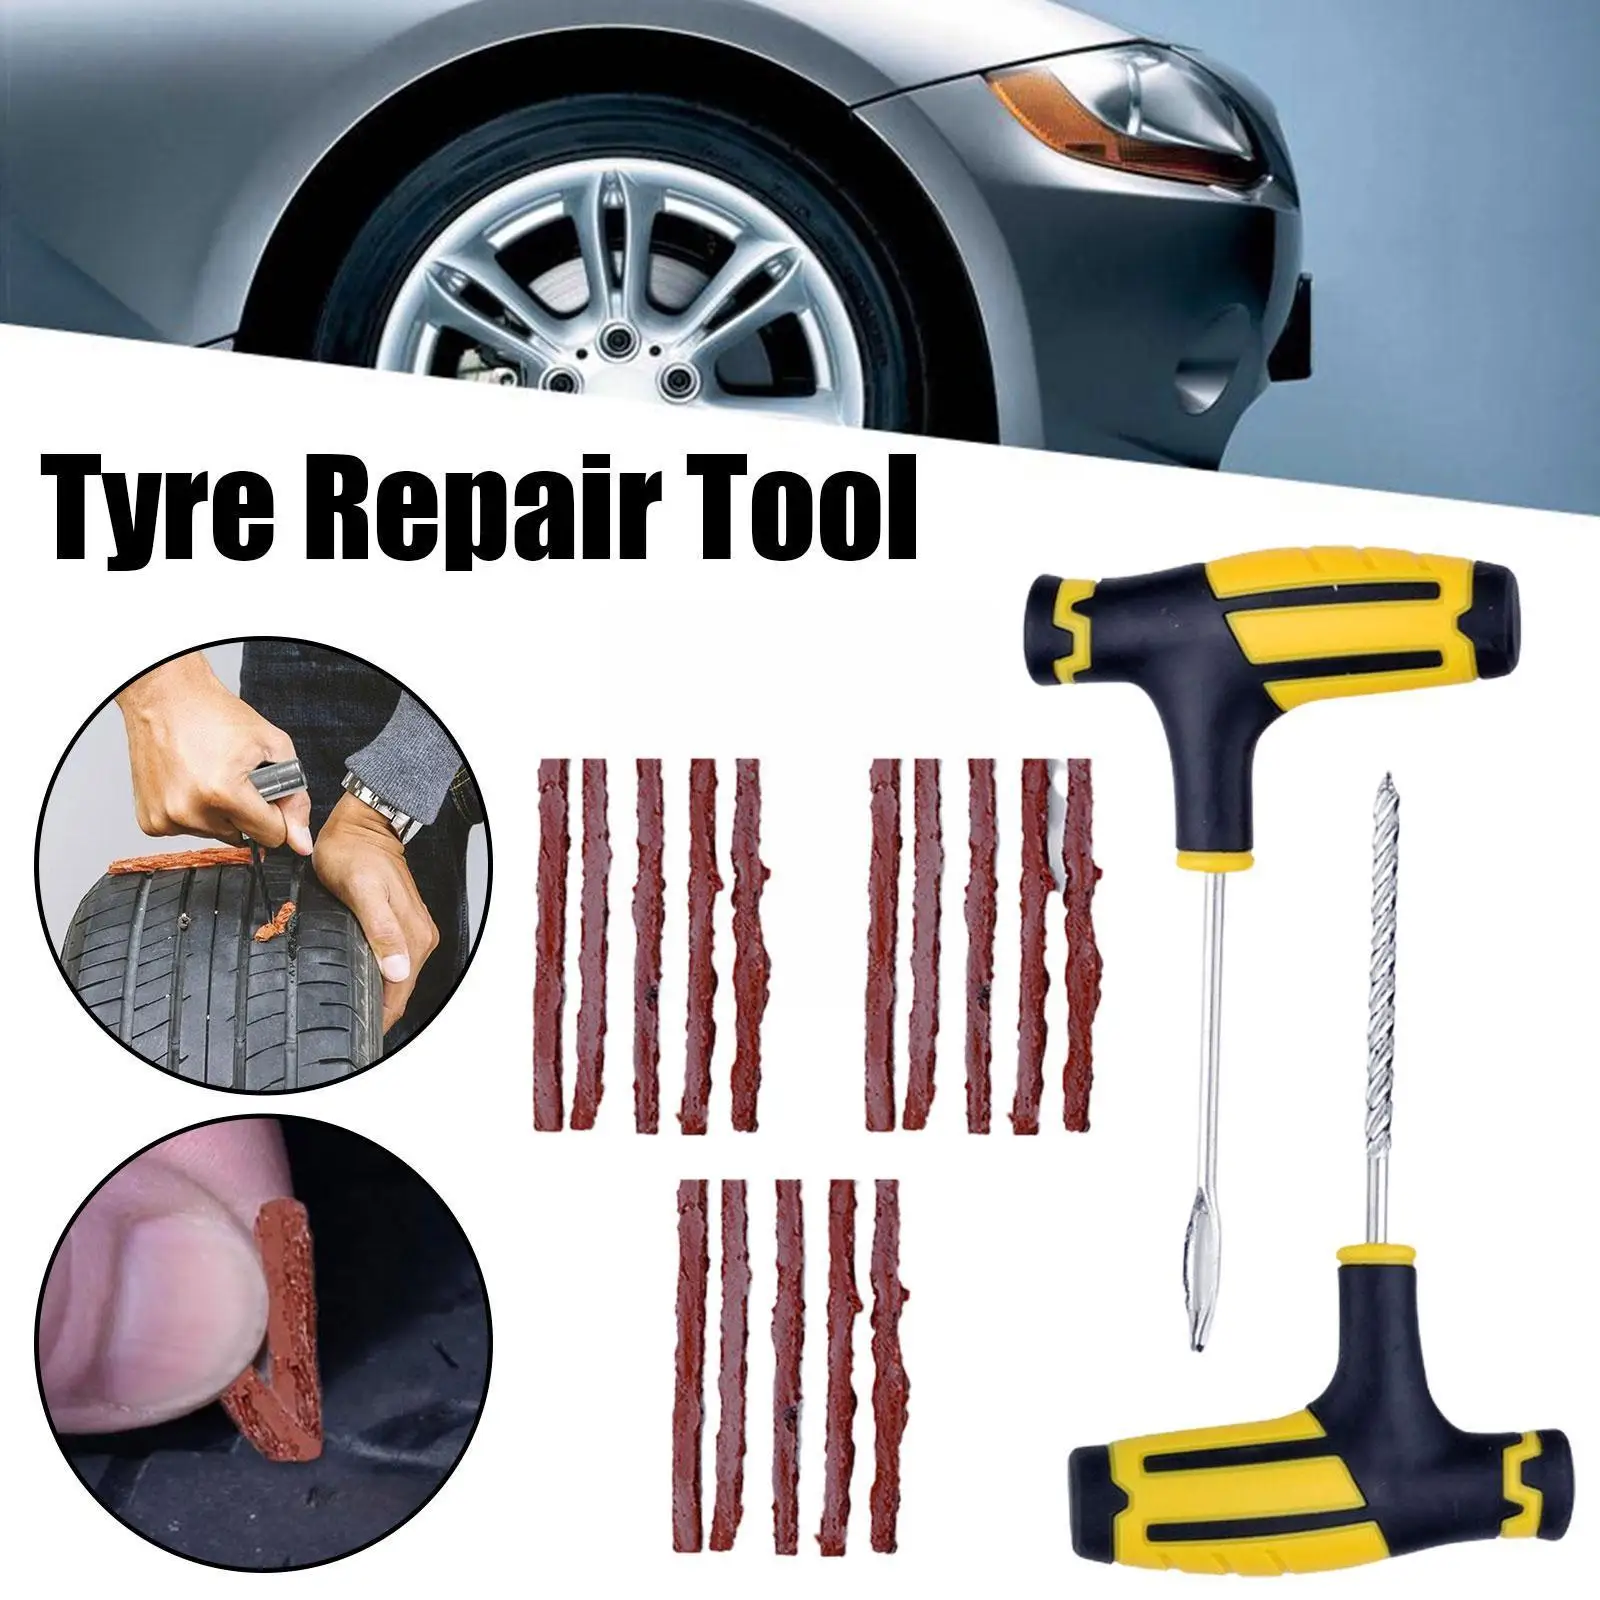 

Car Tire Repair Tool Tire Repair Kit Auto Tire Tyre Wheel Truck Plug Repair Cement Garage Puncture Tubeless Tool Car Tool T N1P5